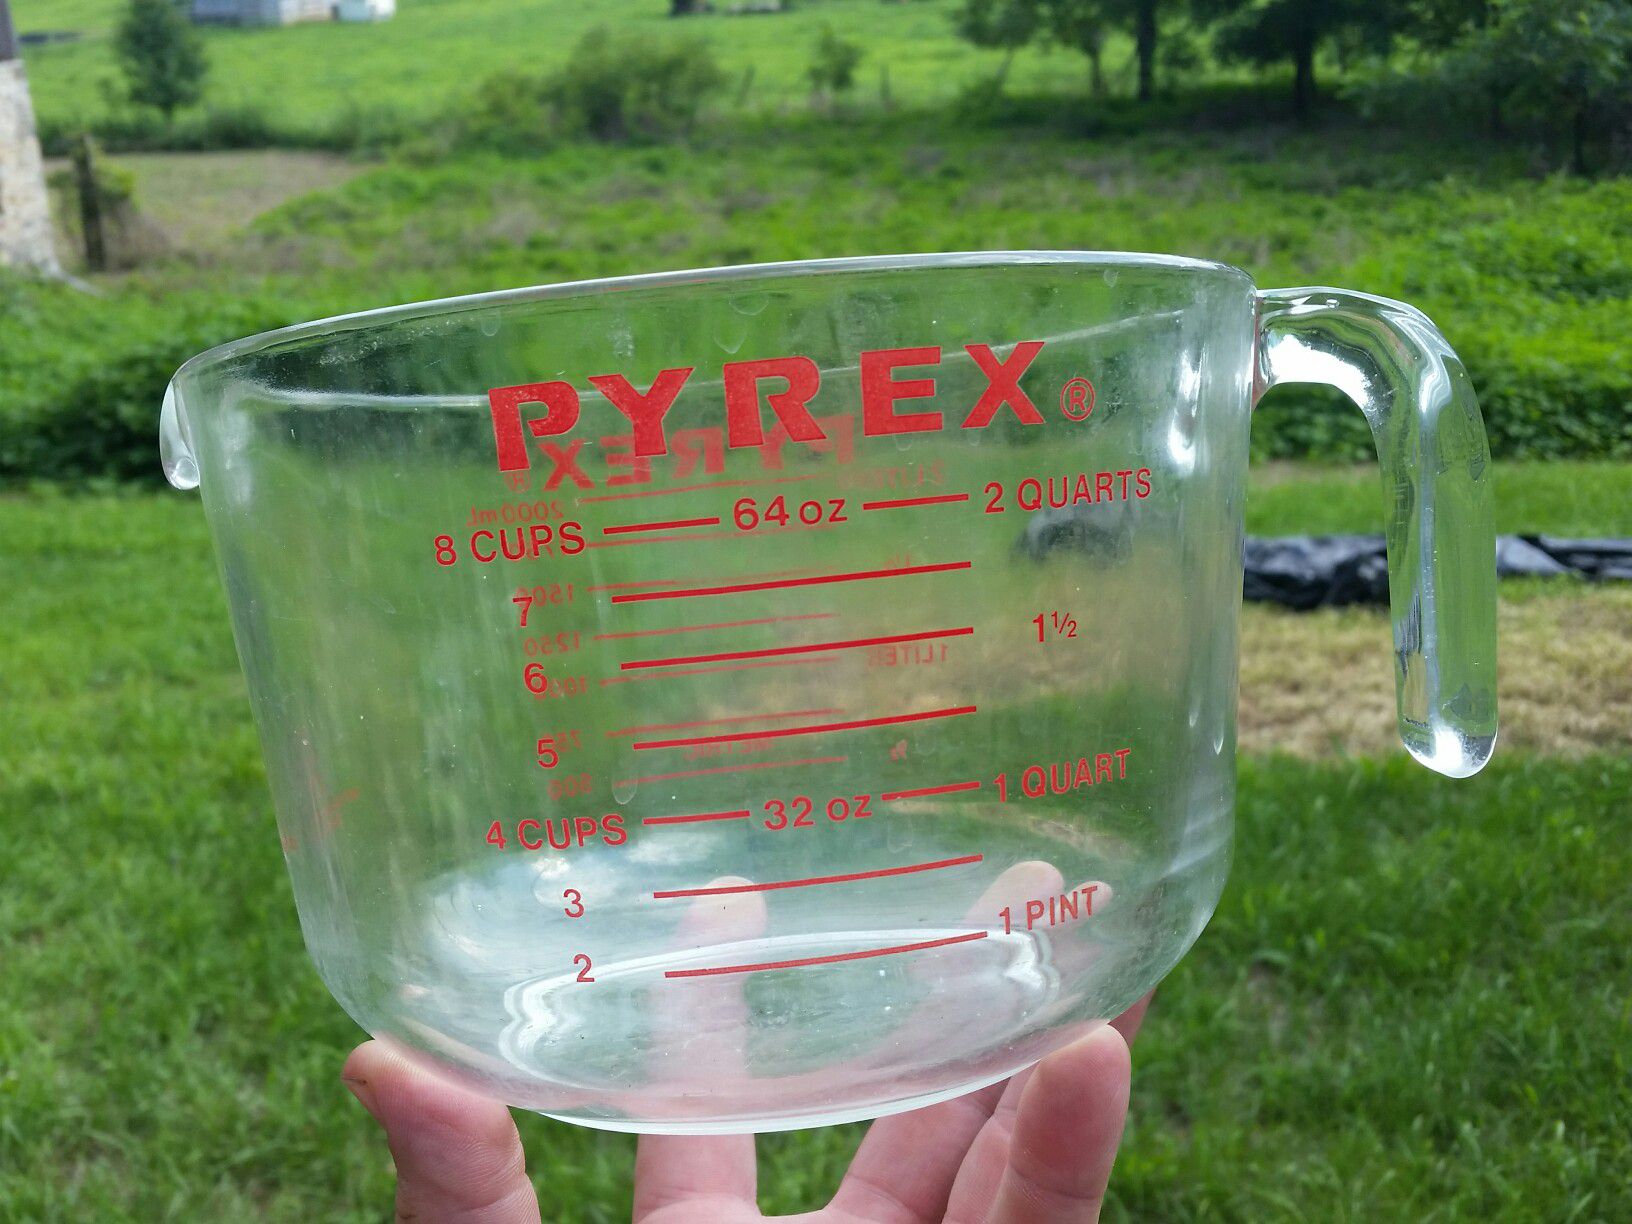 Giant Pyrex 564 measuring cup 8 cup 64 oz 2 quarts